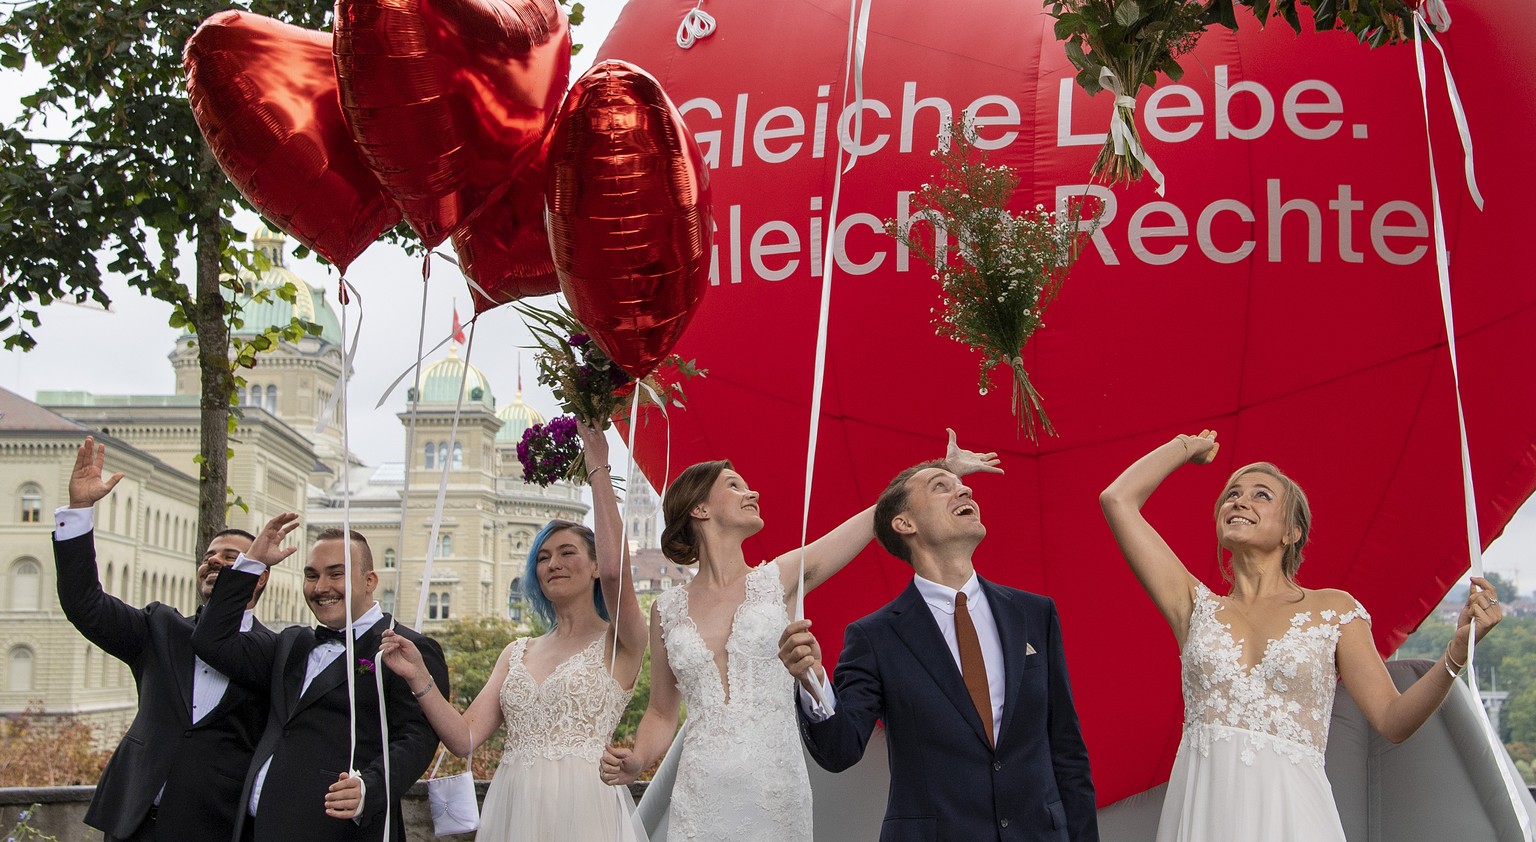 Die Operation Libero inszeniert mit Brautpaaren eine Ehe fuer alle, am Sonntag, 26. September 2021 in Bern. Das eidgenoessische Stimmvolk hatte am Sonntag ueber zwei Vorlagen zu bestimmen, die Volksin ...